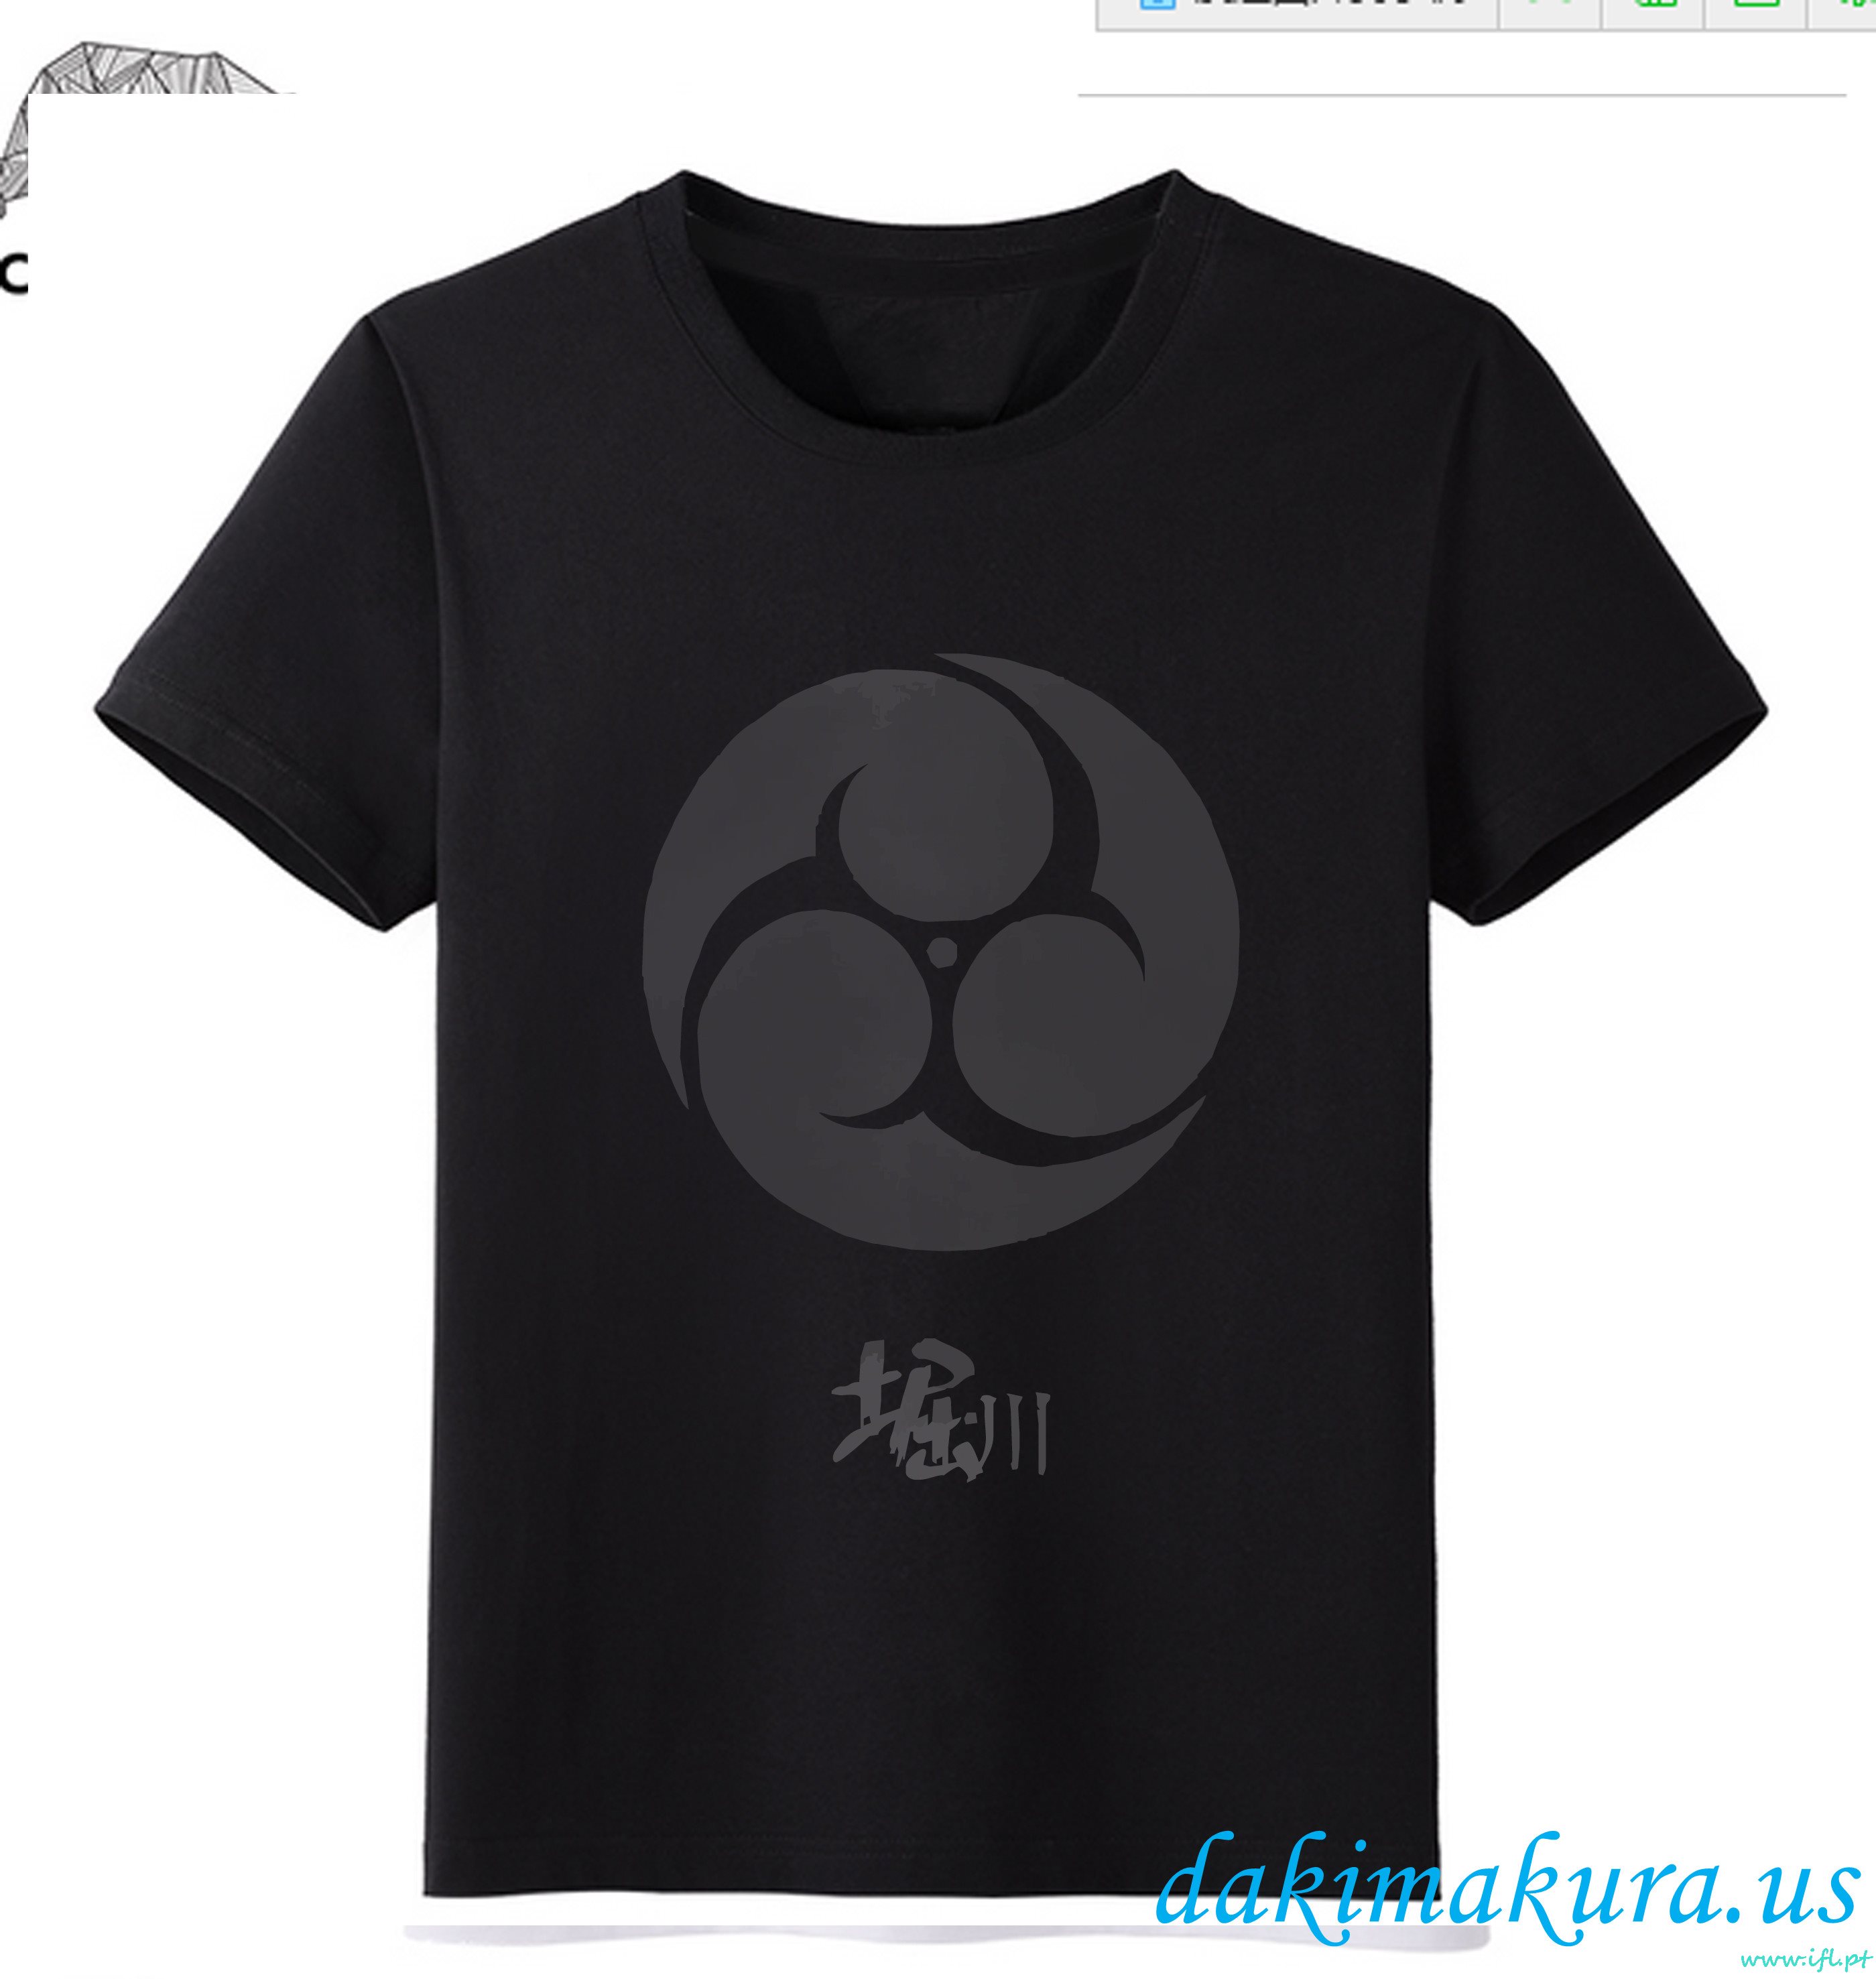 φθηνά μαύρα - Touken Ranbu σε απευθείας σύνδεση άνδρες Anime μόδα T-shirts από το εργοστάσιο της Κίνας